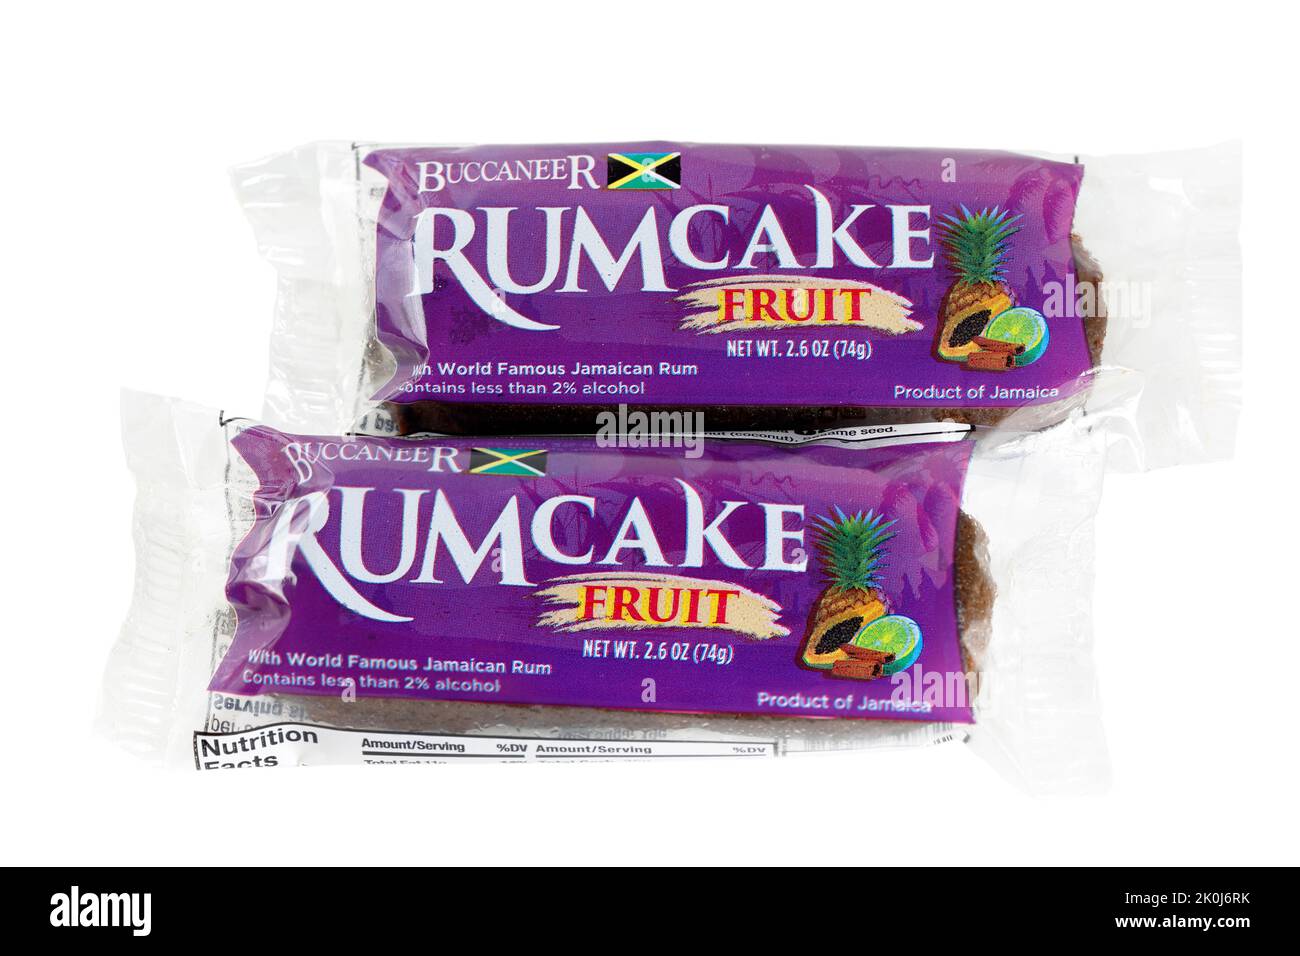 Deux morceaux de Buccaneer Rum Cake, rumcake de fruit isolé sur un fond blanc. Image découpée pour l'illustration et l'usage éditorial Banque D'Images